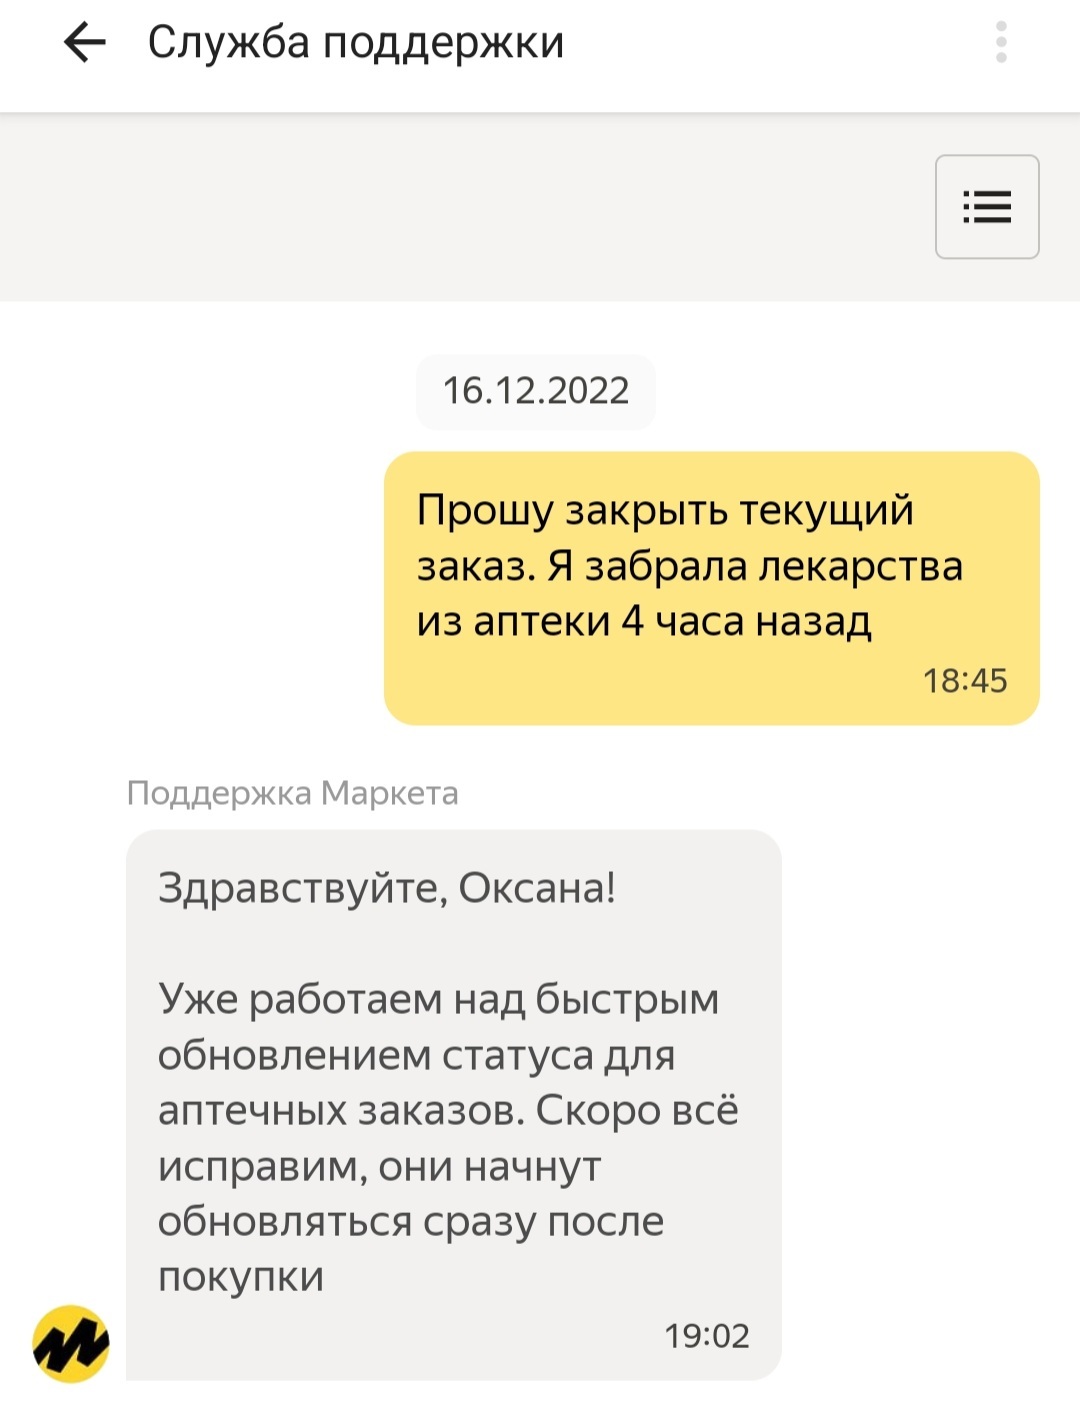 Яндекс Почта: истории из жизни, советы, новости, юмор и картинки — Все посты | Пикабу